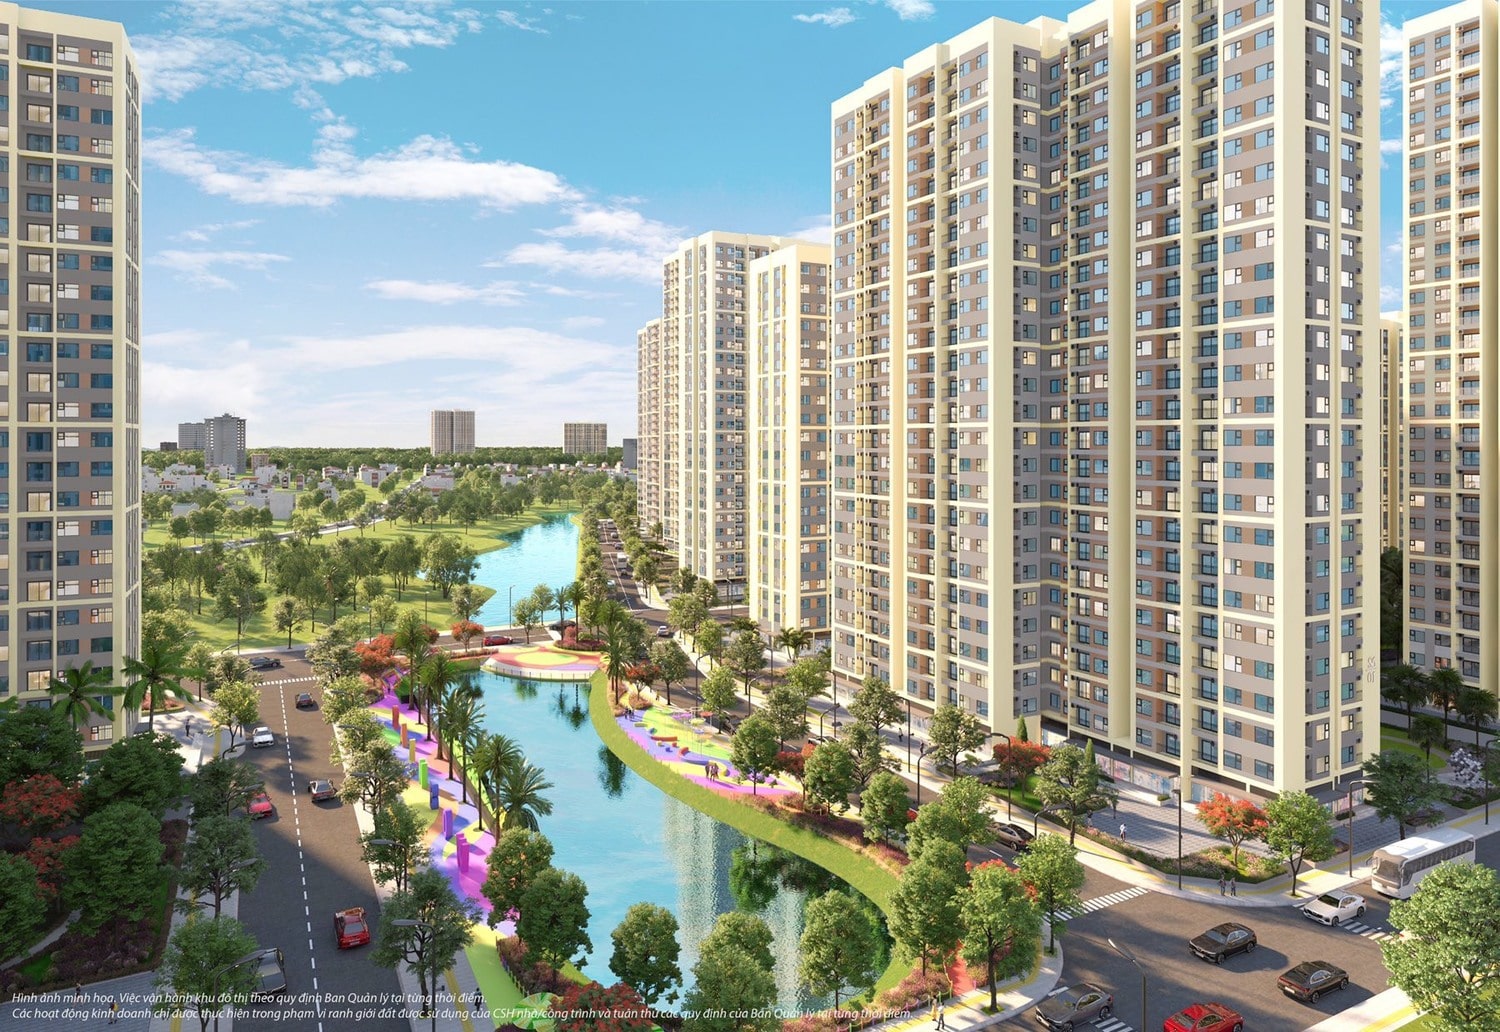 Tiện ích nổi bật của dự án Grand Marina Saigon 